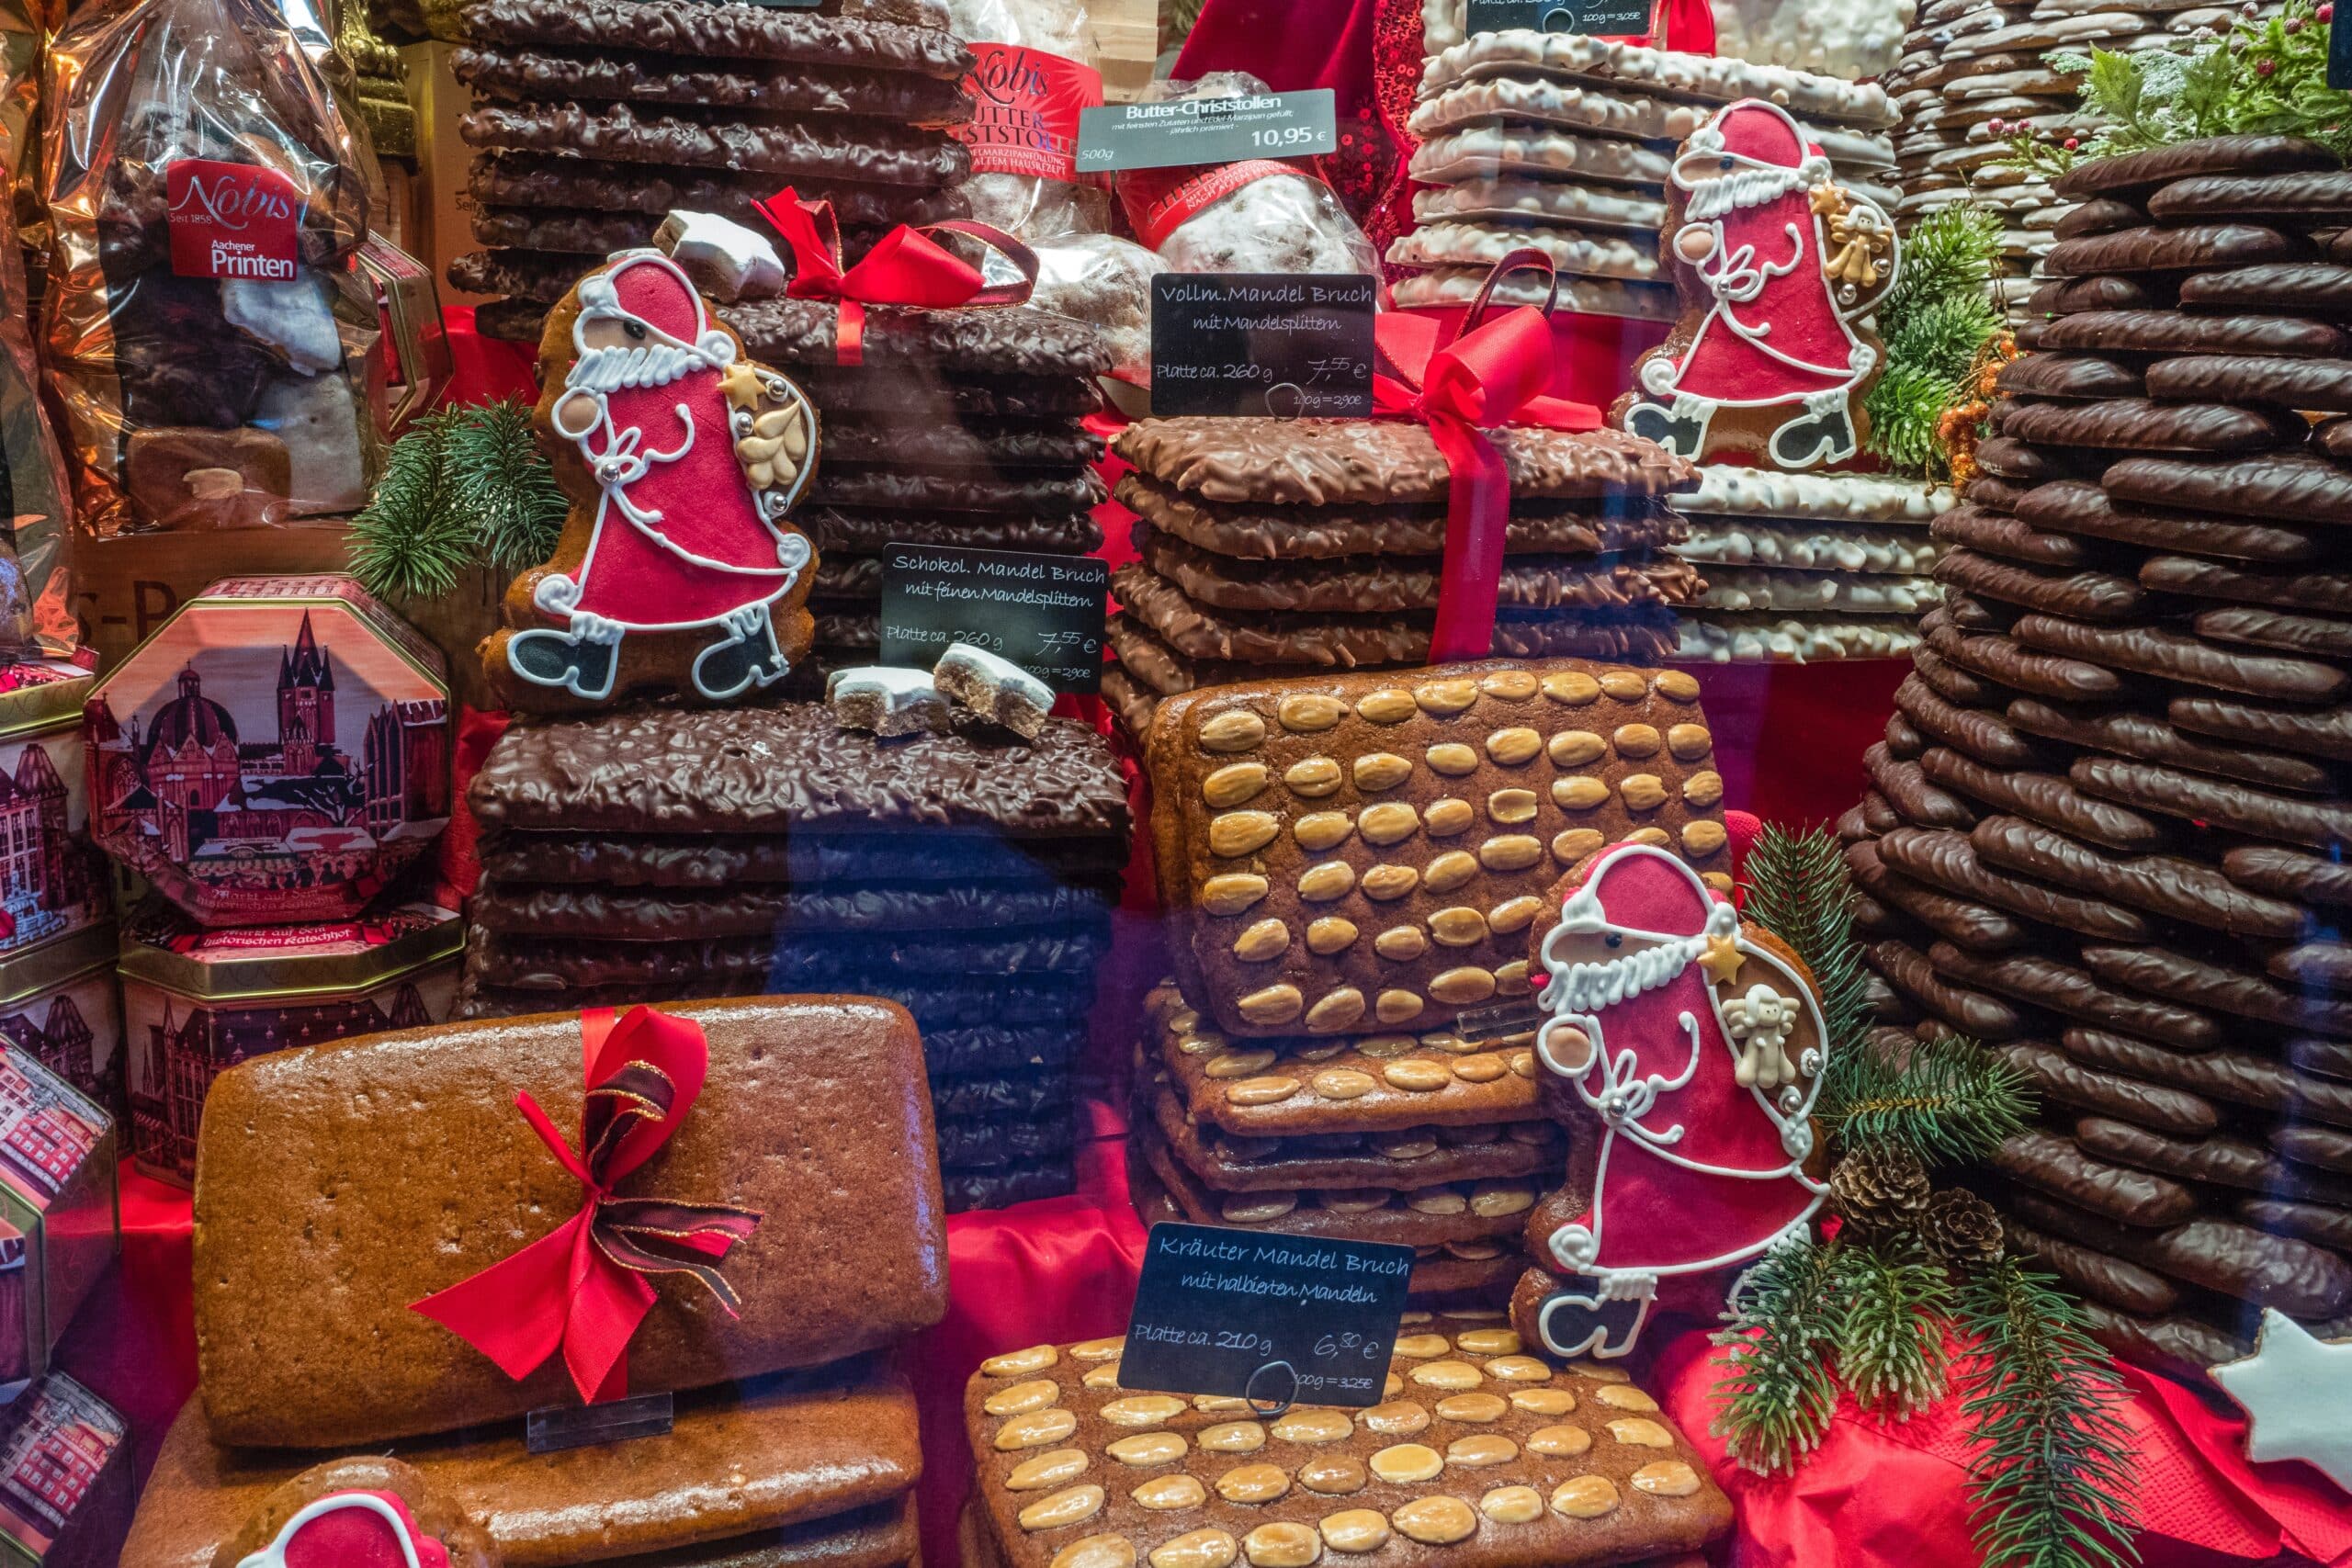 ‘Marché de Noël’, el bazar donde hallarás tus regalos de Navidad